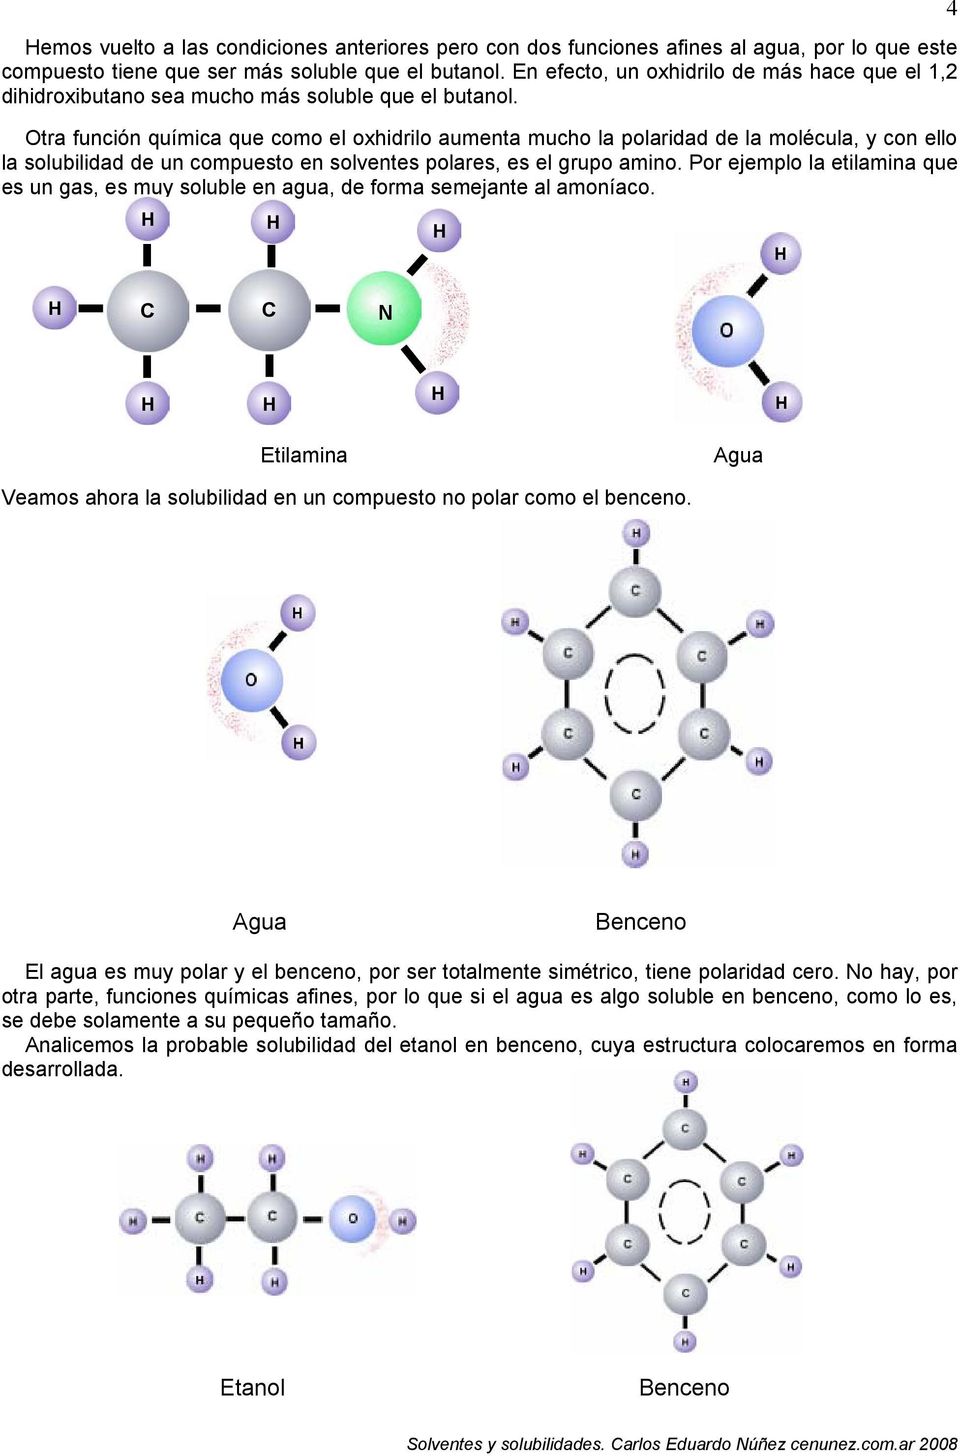 tra función química que como el oxhidrilo aumenta mucho la polaridad de la molécula, y con ello la solubilidad de un compuesto en solventes polares, es el grupo amino.